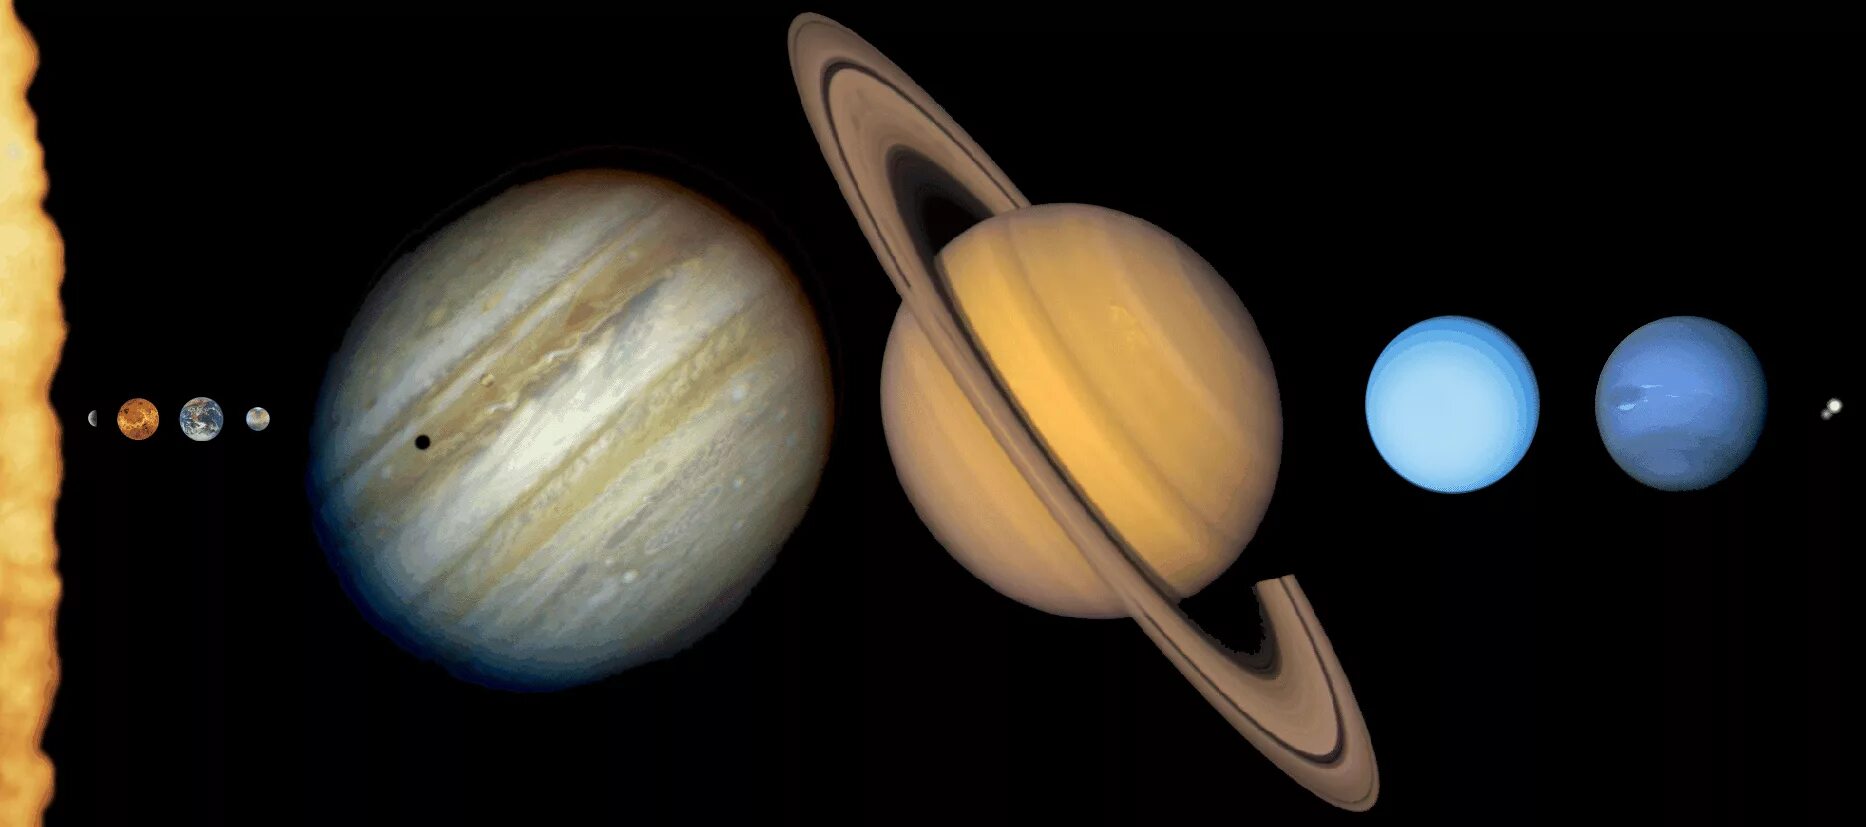 Снимки Сатурна Вояджер. Планеты гиганты Юпитер Уран. Земля Нептун Уран Сатурн Юпитер. Марс Юпитер Сатурн Уран Нептун.